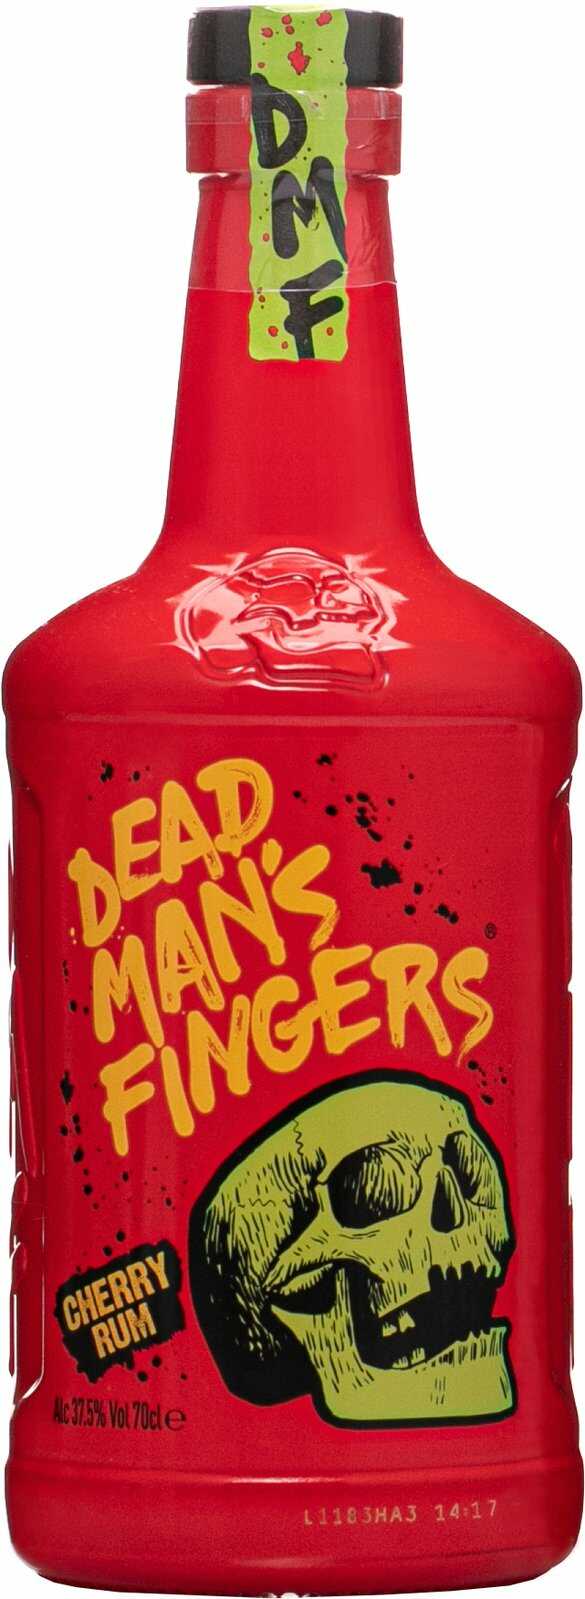 Dead Man's Fingers Cherry Rum 37,5% 0,7 l